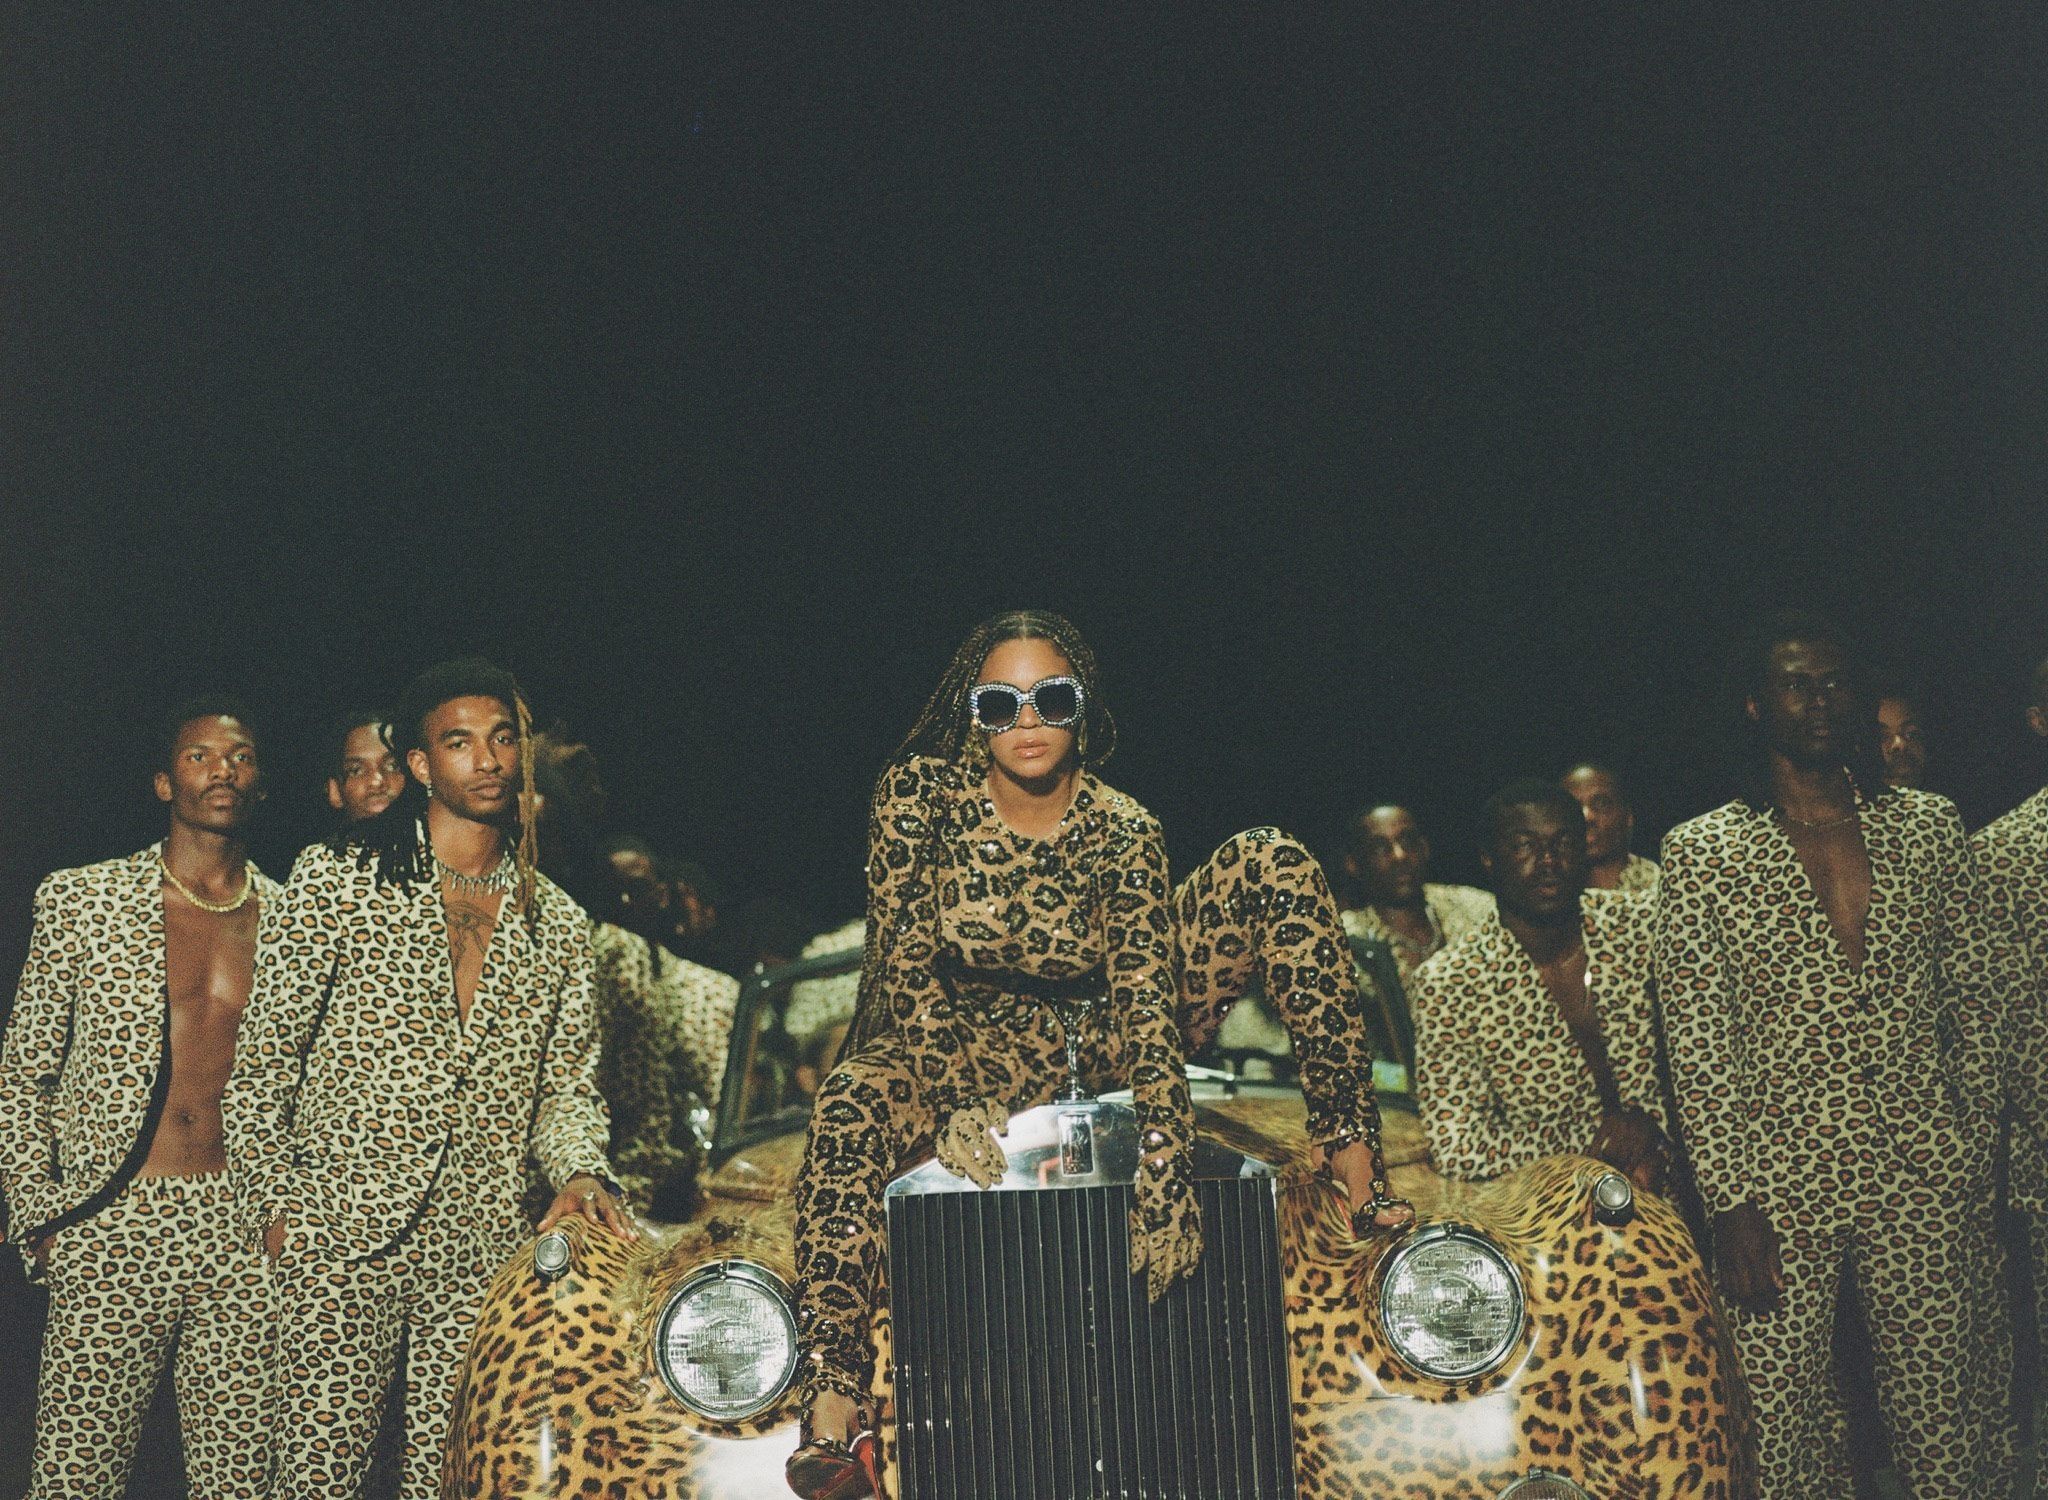 Beyoncé in Nine Image: A Close Read